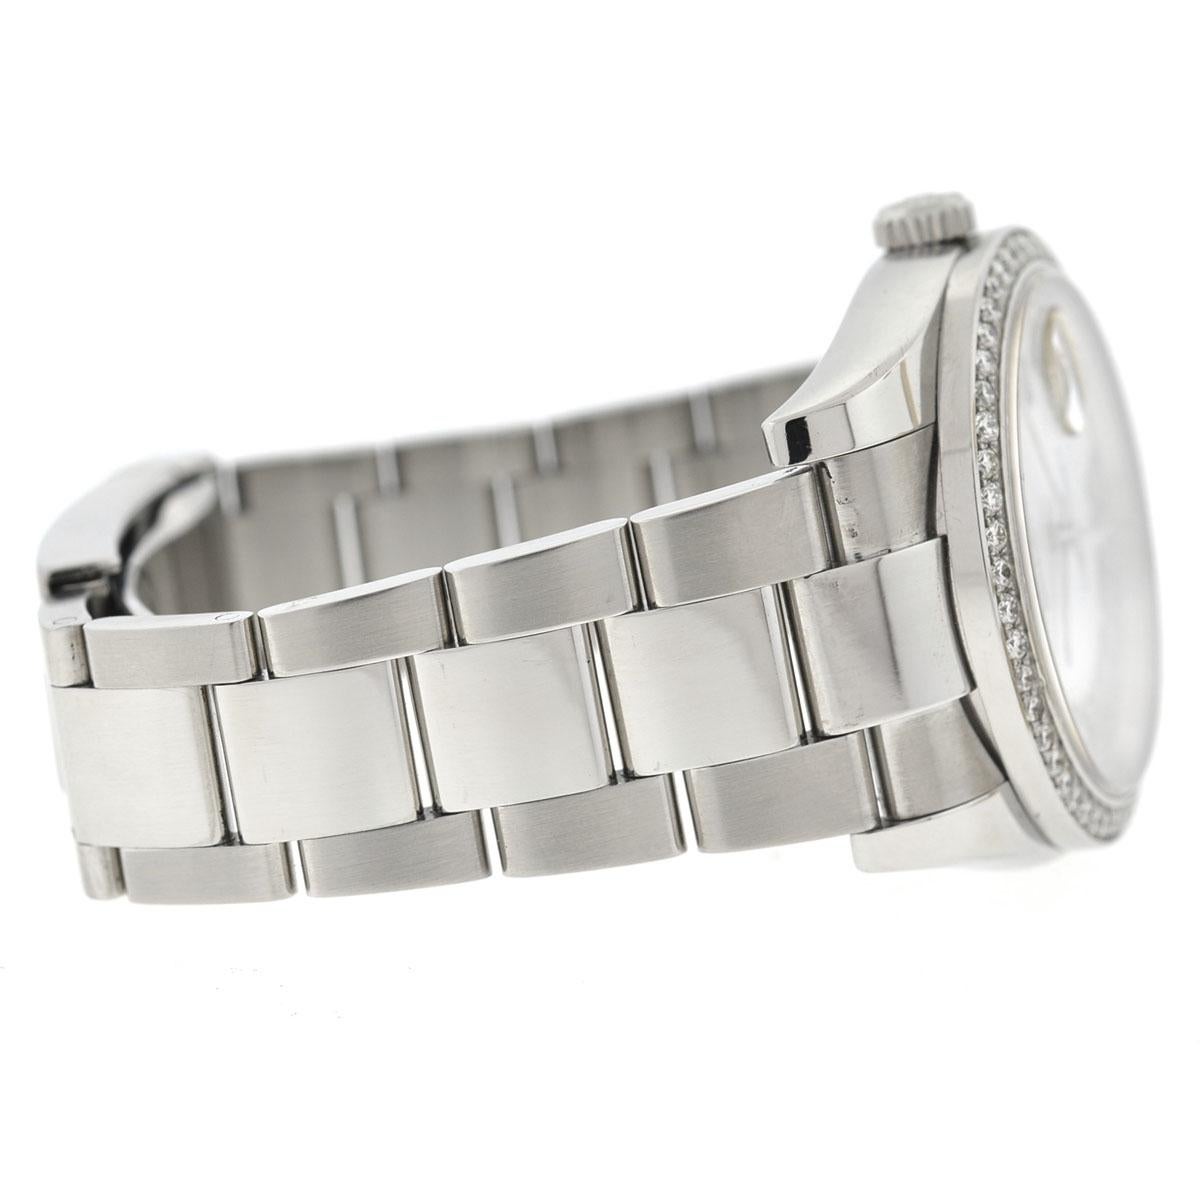 Rolex 116200 Datejust MOP Diamond Dial Diamond Bezel Stainless Steel Watch 2